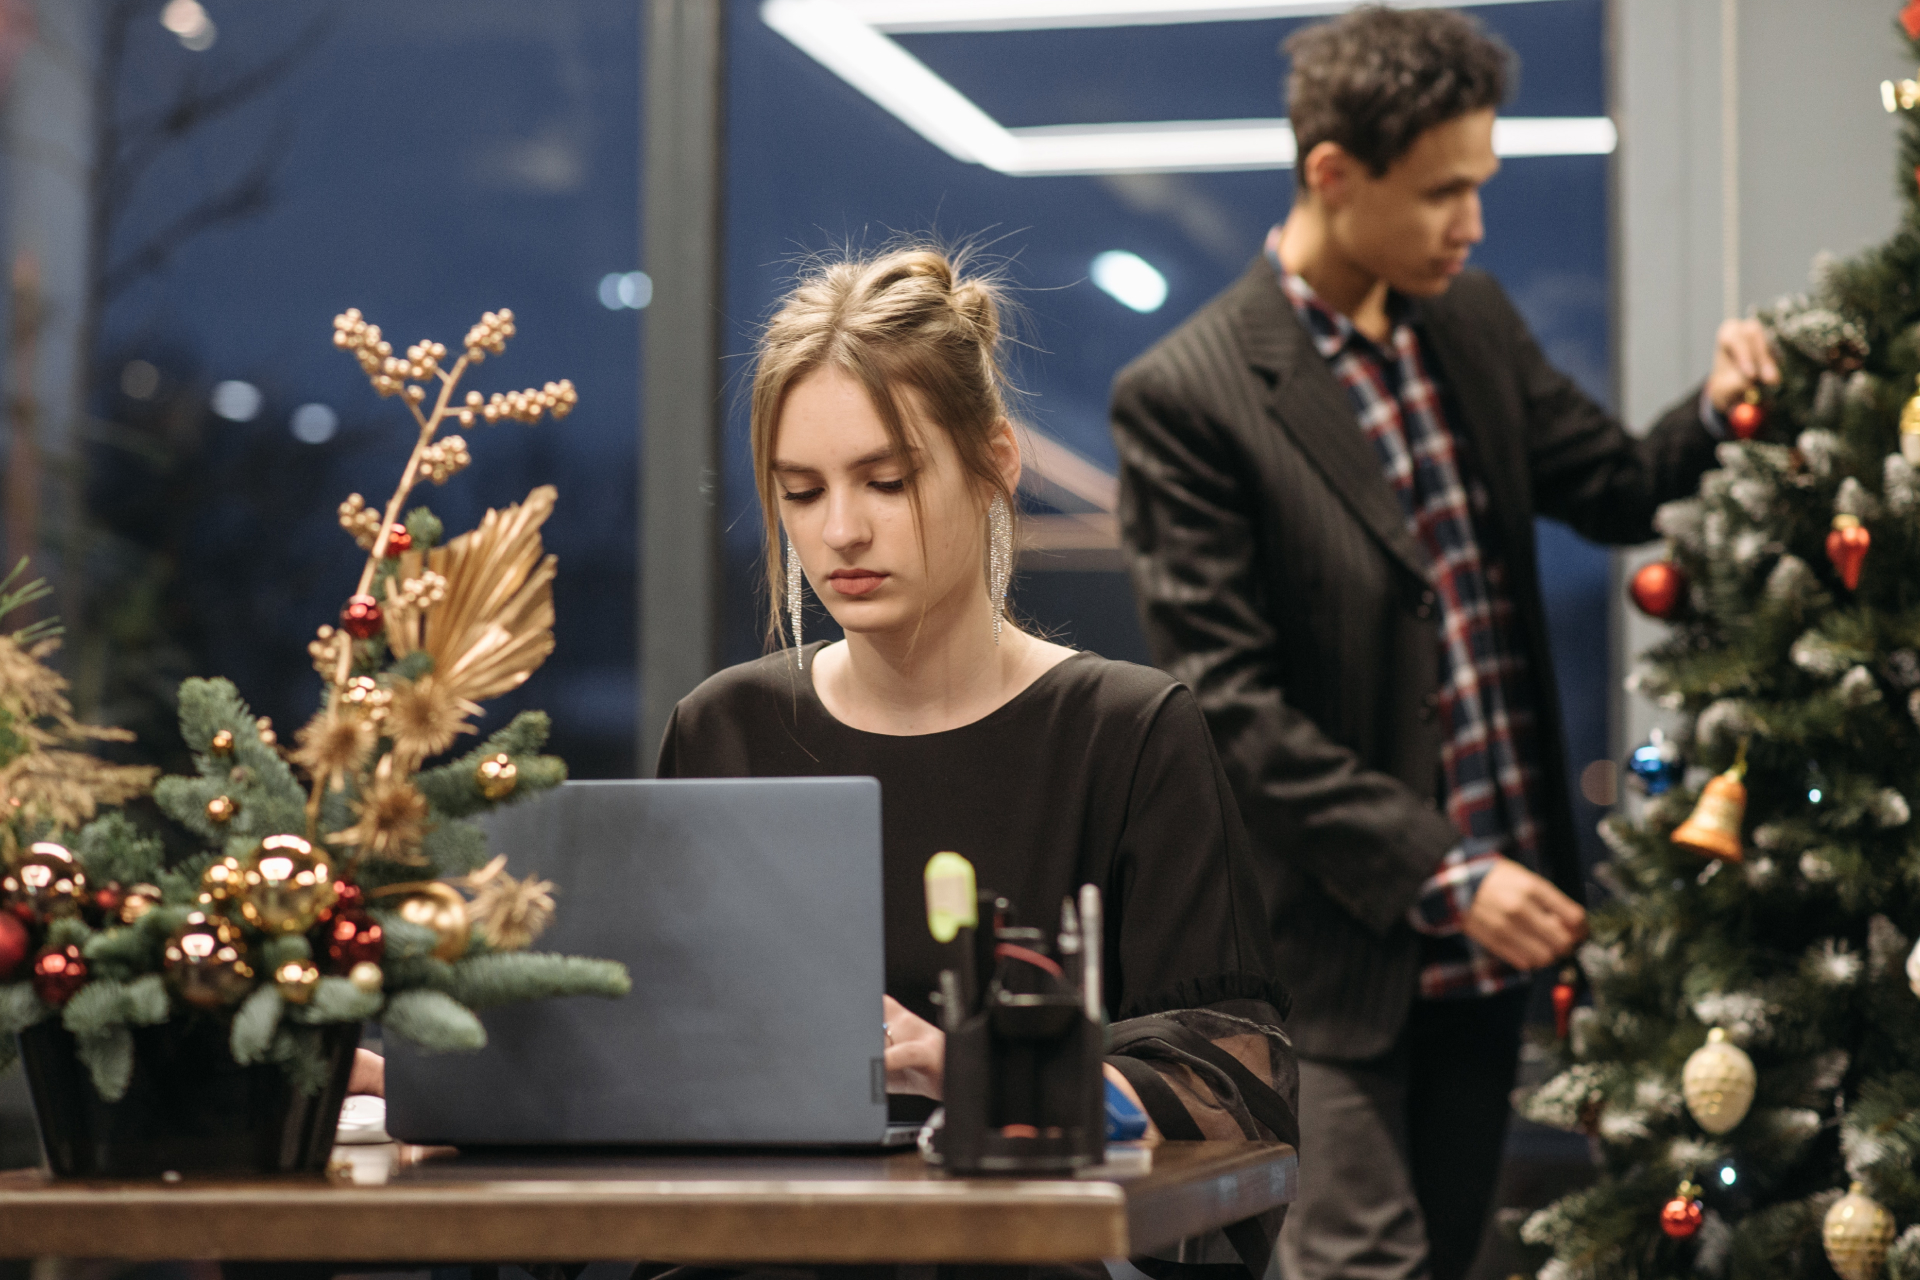 Ein Mann schmückt den Weihnachtsbaum und eine Frau arbeitet am Laptop